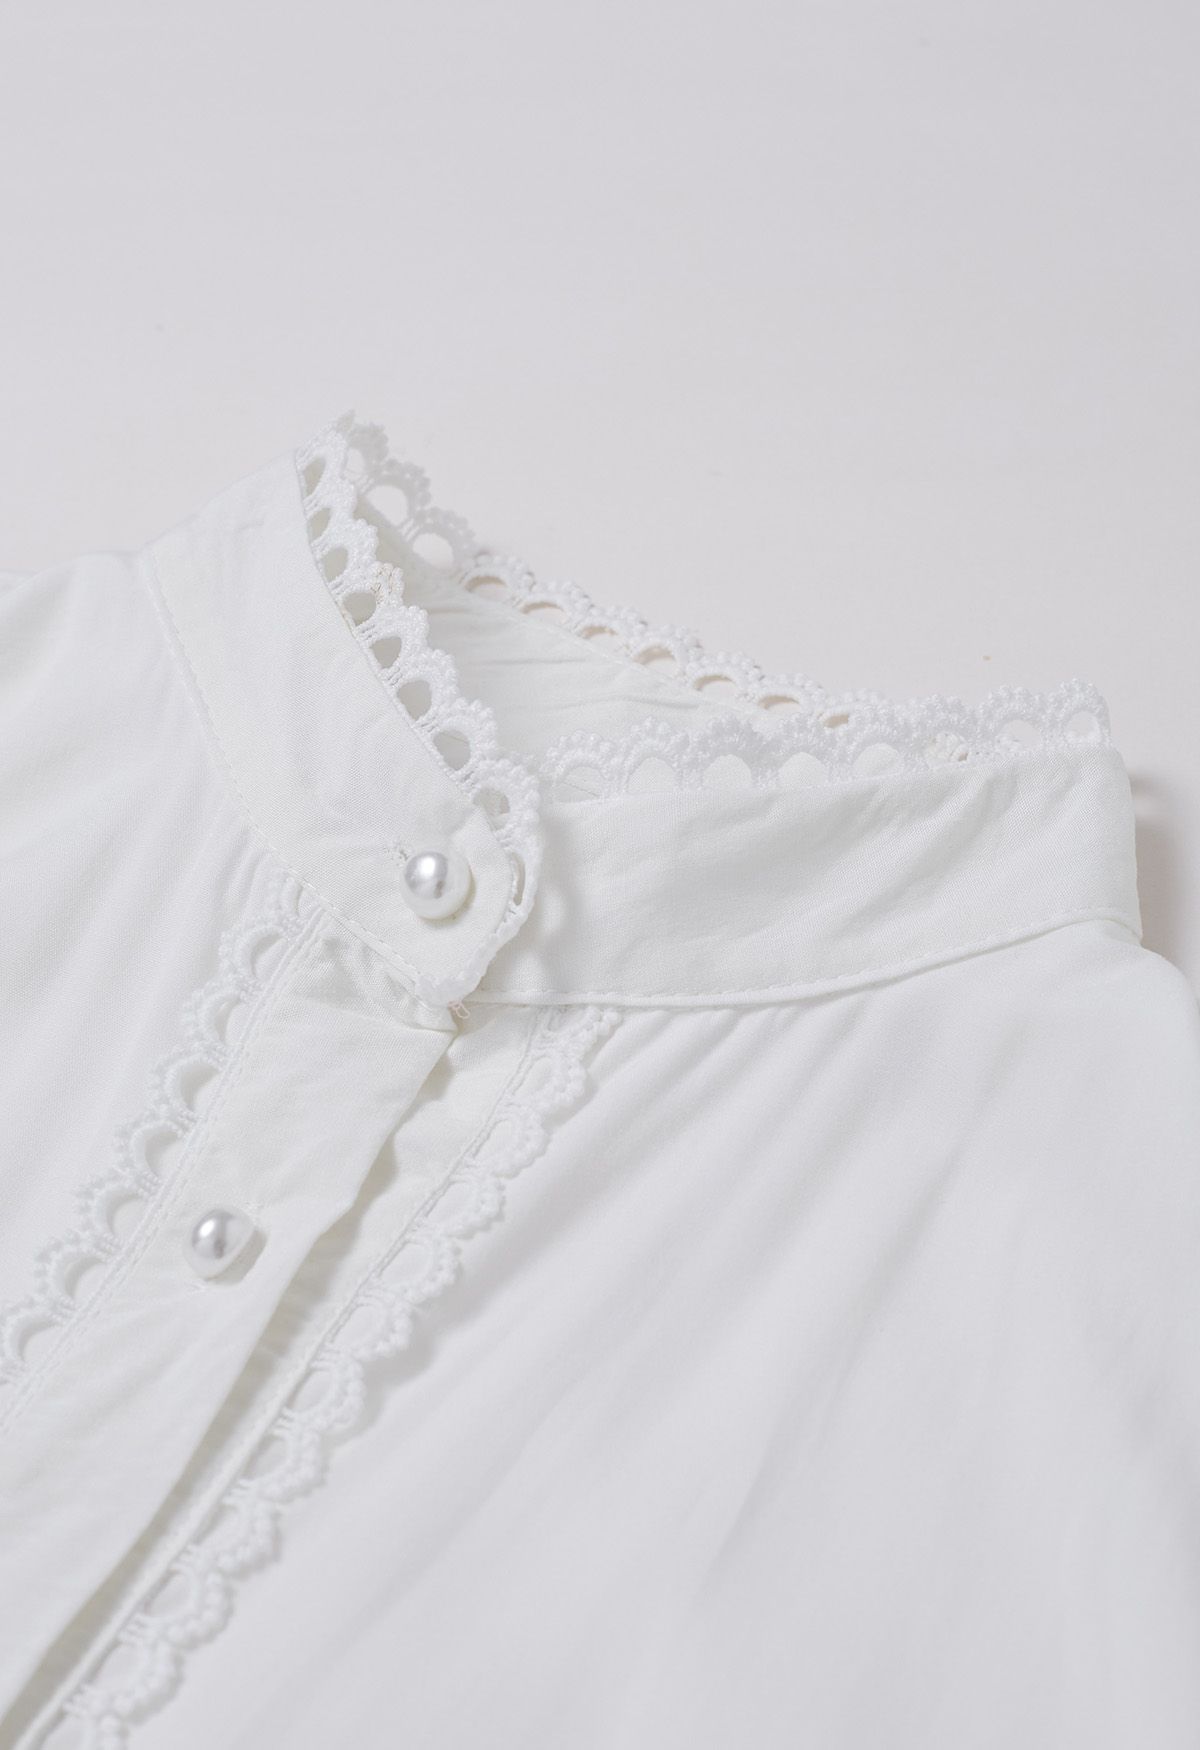 فستان كروشيه بأزرار على الخصر وربطة عنق باللون الأبيض